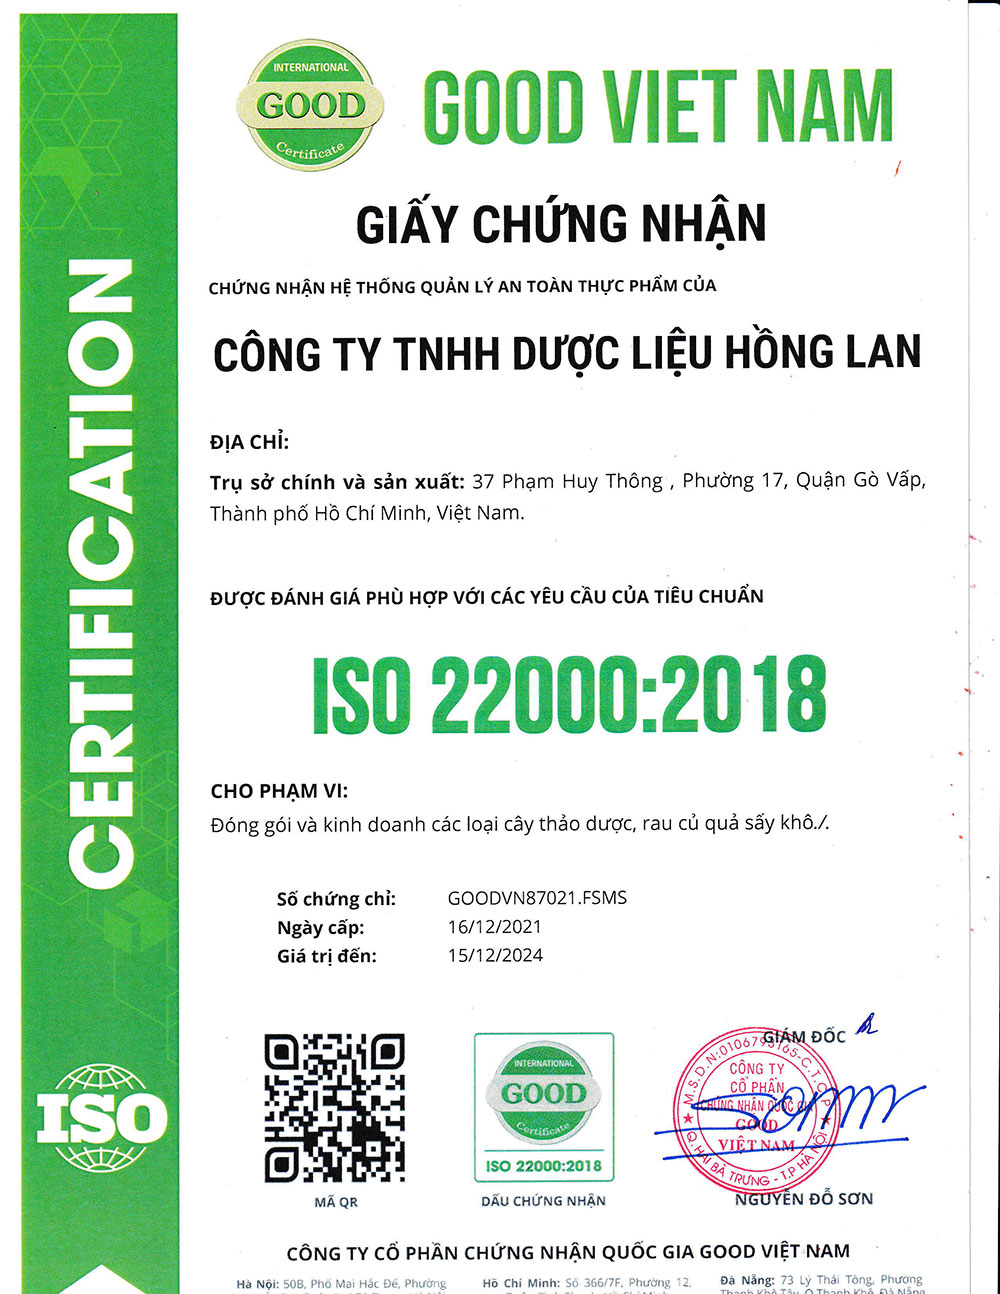 Trà Điều Trị Đau Dạ Dày dạng túi lọc được sản xuất theo hệ thống quản lý an toàn thực phẩm ISO 22000:2018 được cấp bởi công ty cổ phần chứng nhận Quốc Gia Good Việt Nam (Good Viet Nam Certification Joint Stock Company)